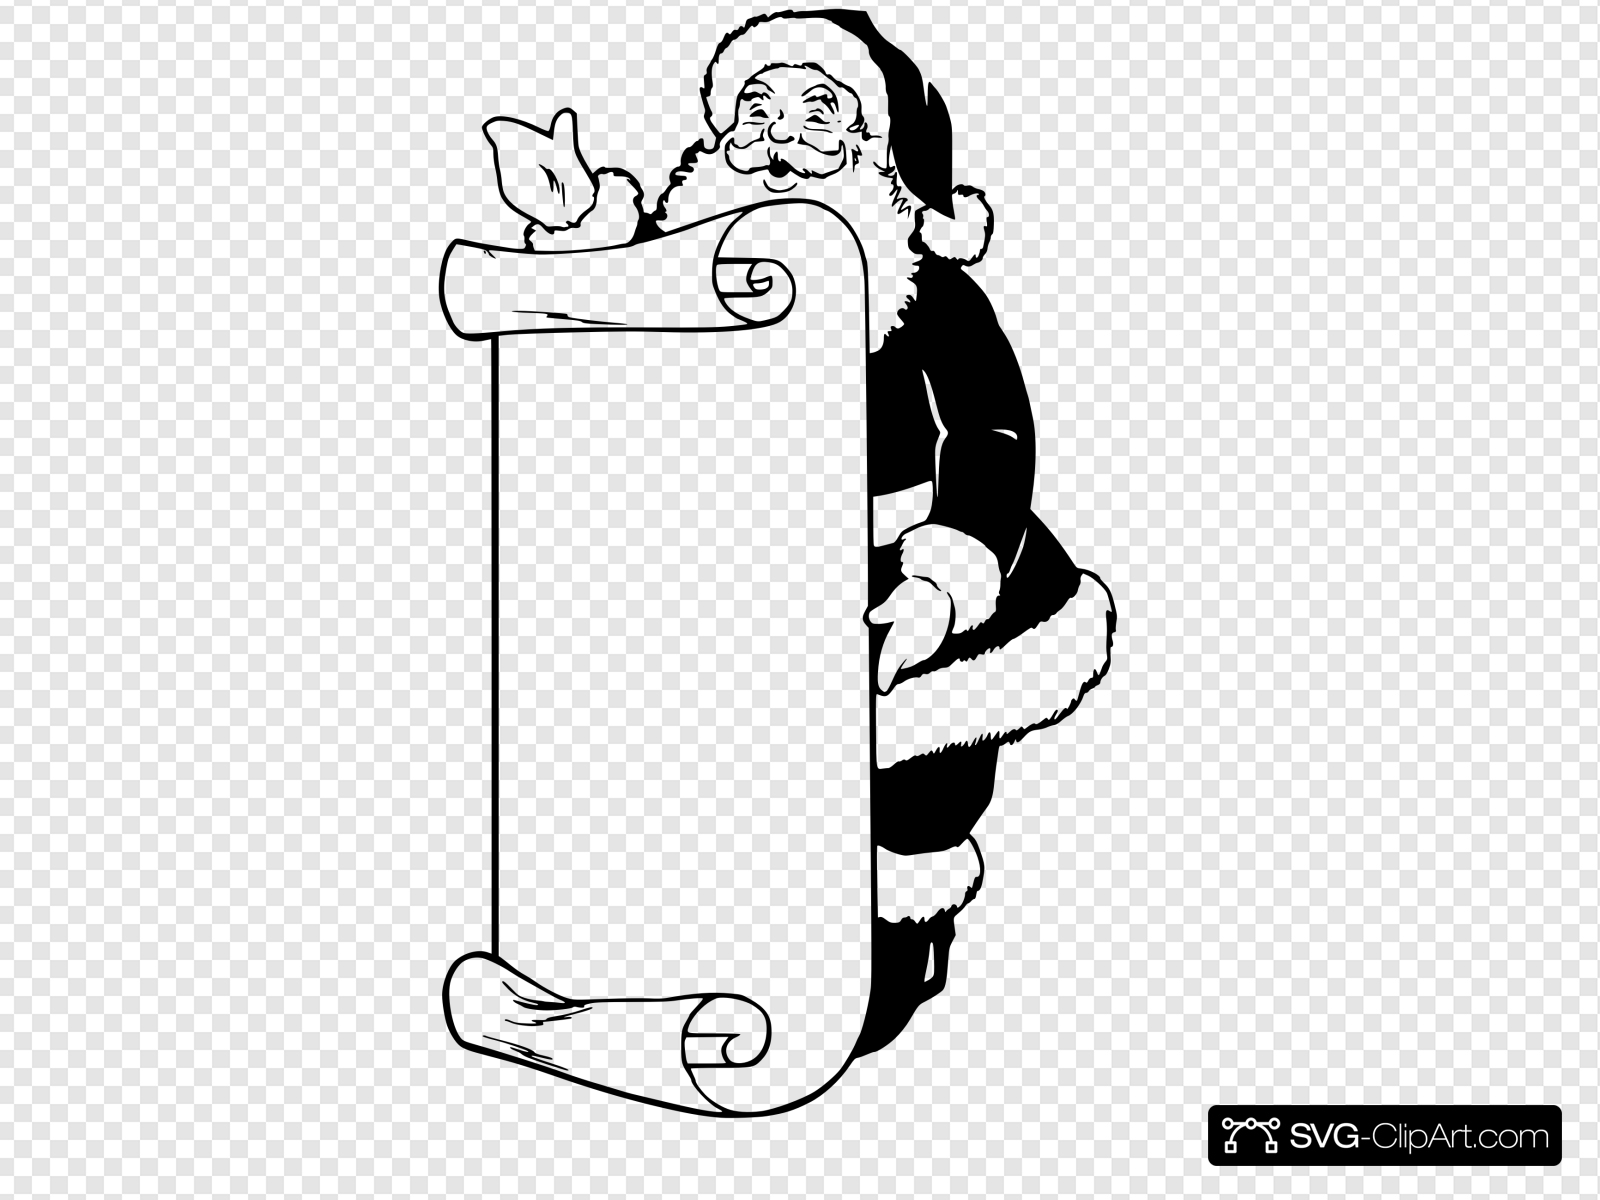 Make A Santa List Clip art, Icon and SVG.